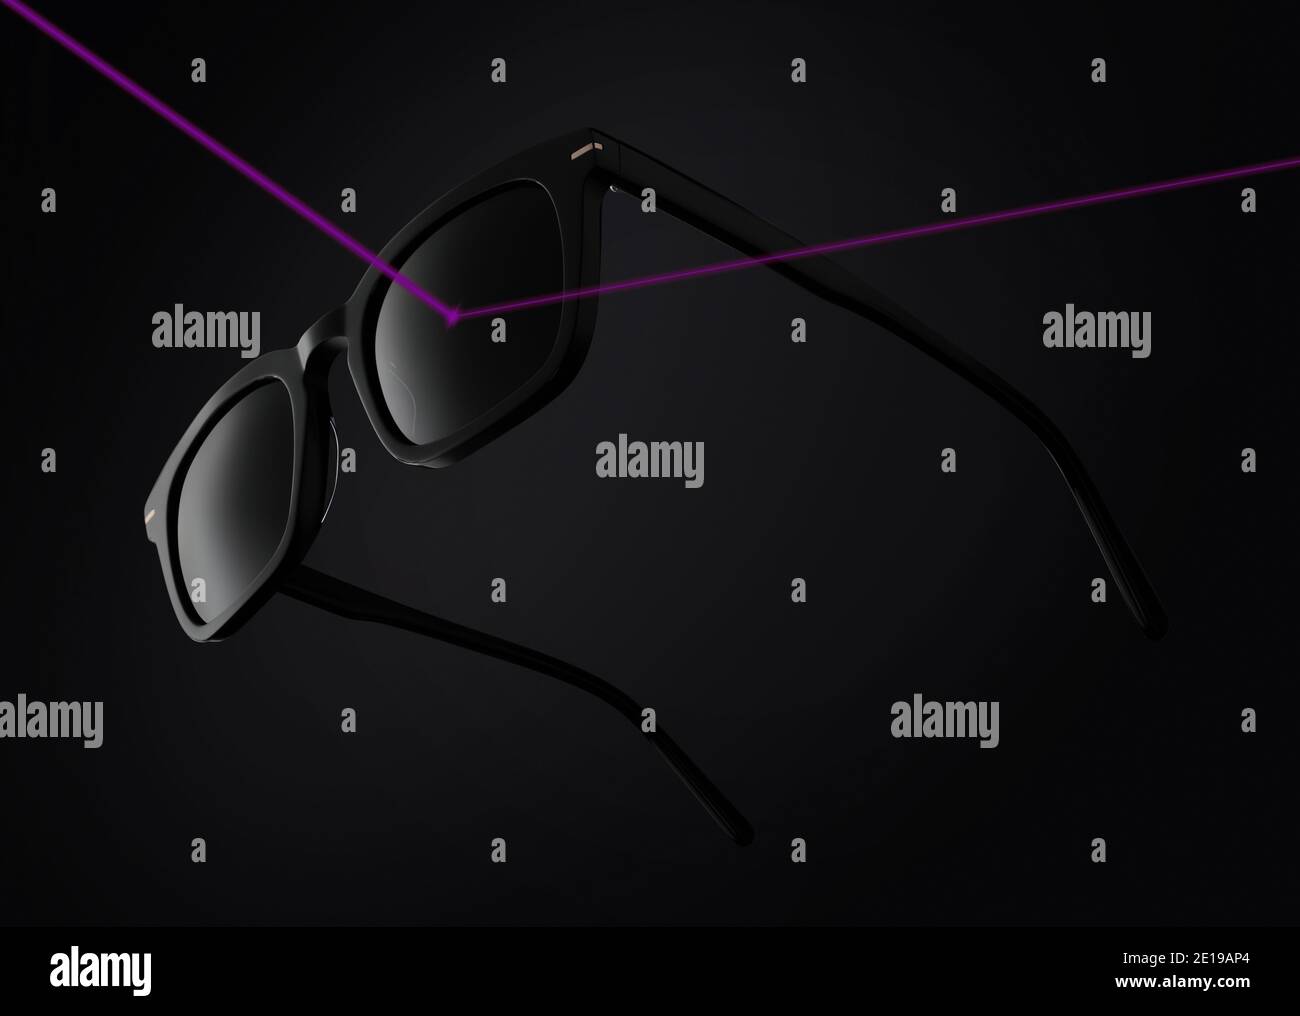 concepto de lentes que protegen de los rayos ultravioletas, gafas de sol aisladas sobre fondo negro filtro luz solar rayos uv , con ilustración de color púrpura Foto de stock